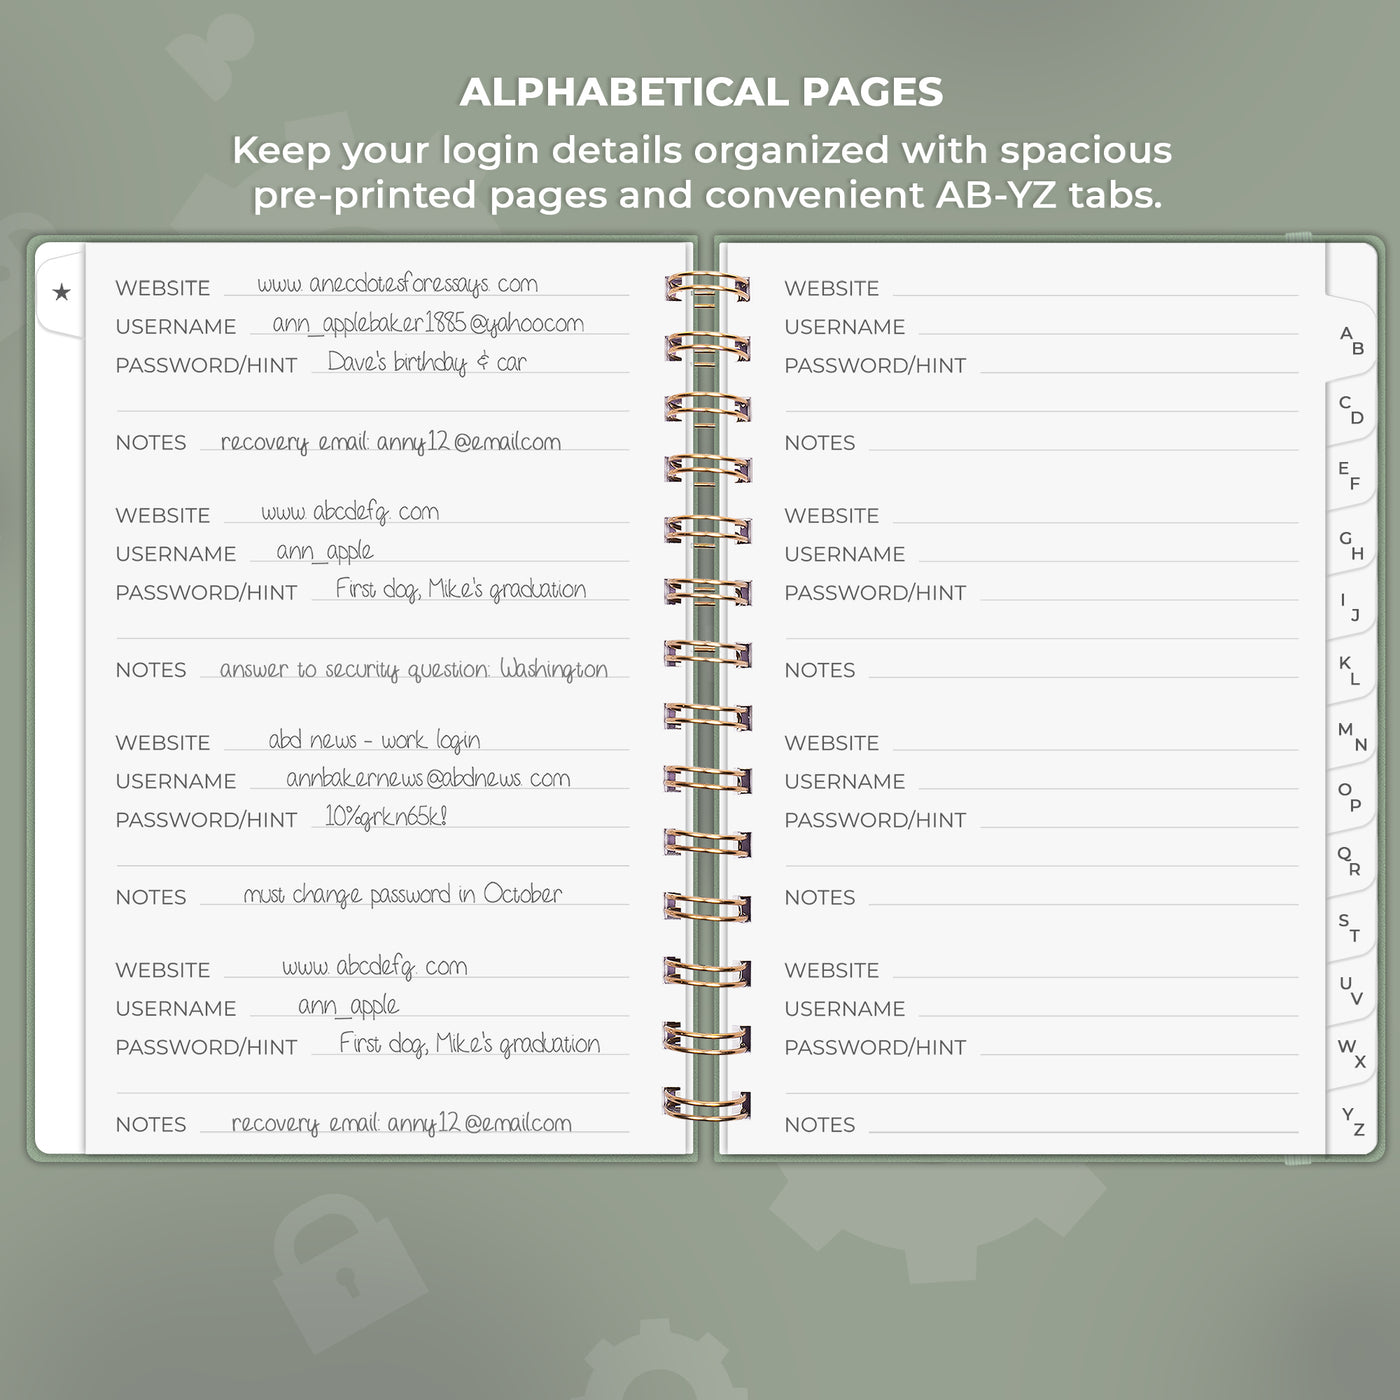 Clever Fox Password Book – Alphabetized Internet Address & Password  Organizer – Computer & Website Password Keeper Notebook – Log-In Password  Journal - Medium, A5, 8.3x5.8″, Hardcover (Dark Green) 